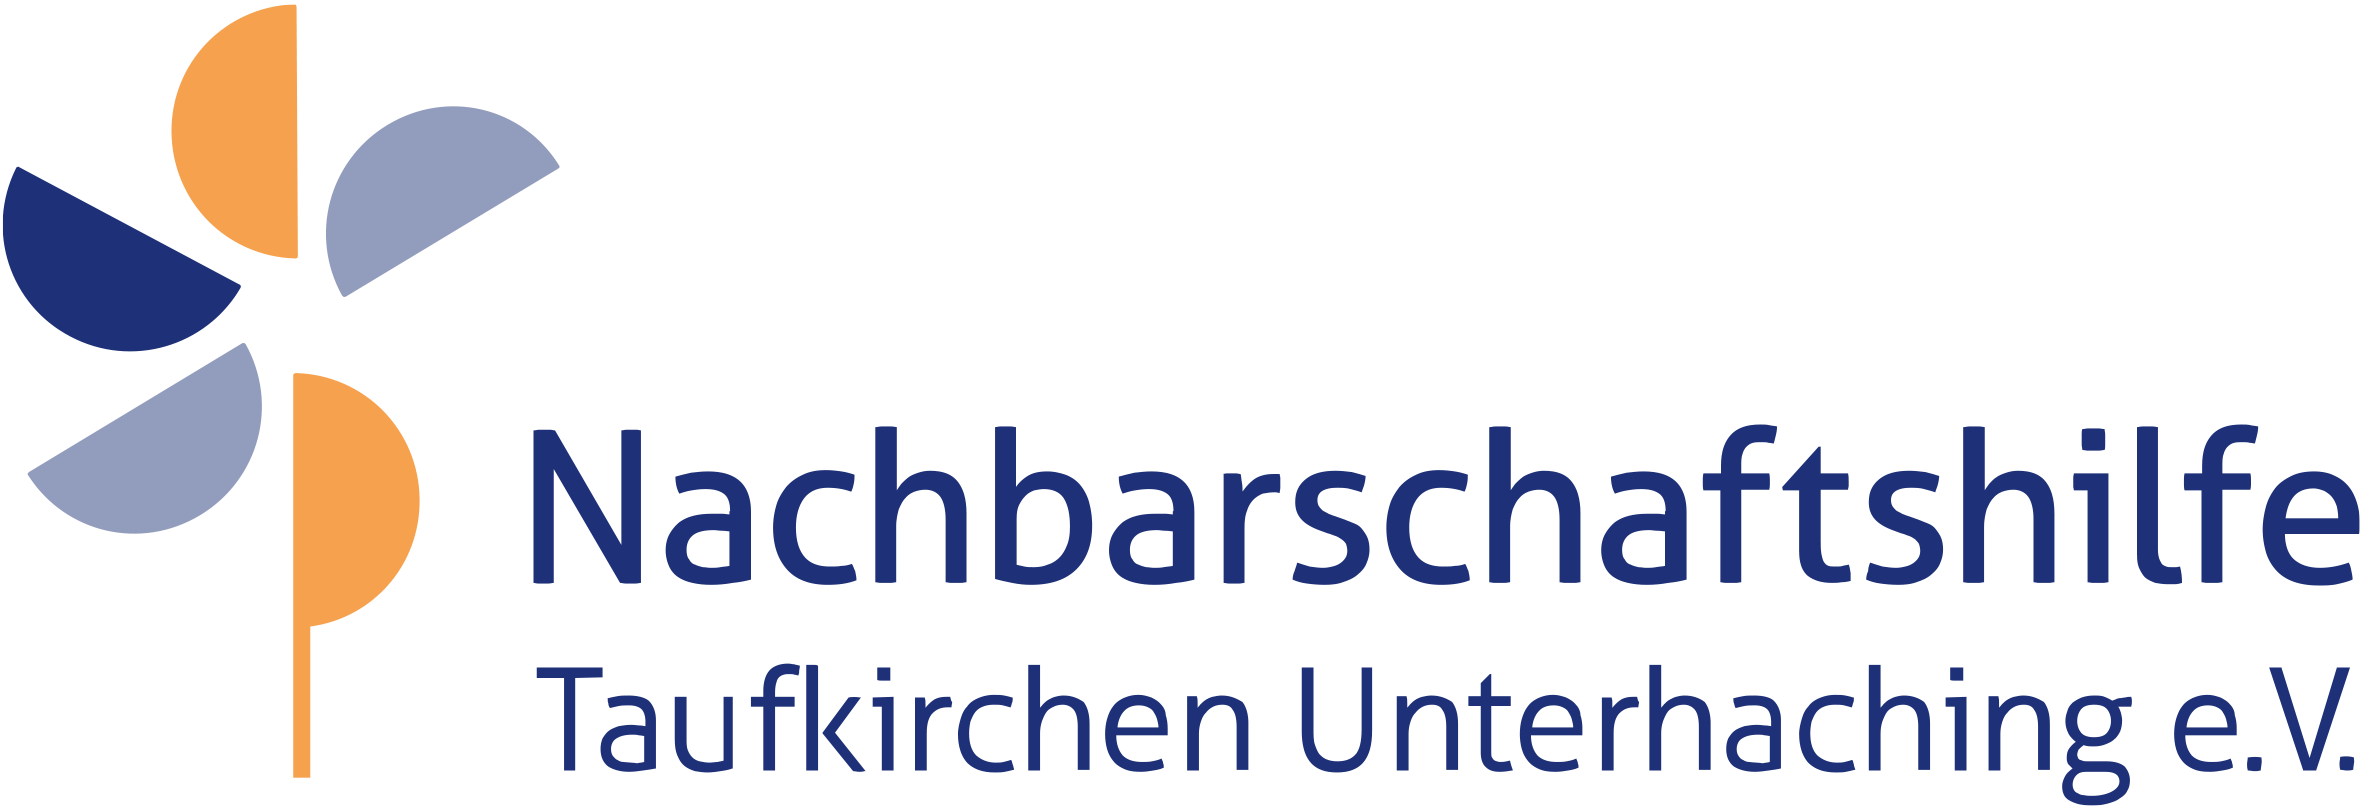 Nachbarschaftshilfe Taufkirchen Unterhaching - Eltern-Kind-Treff